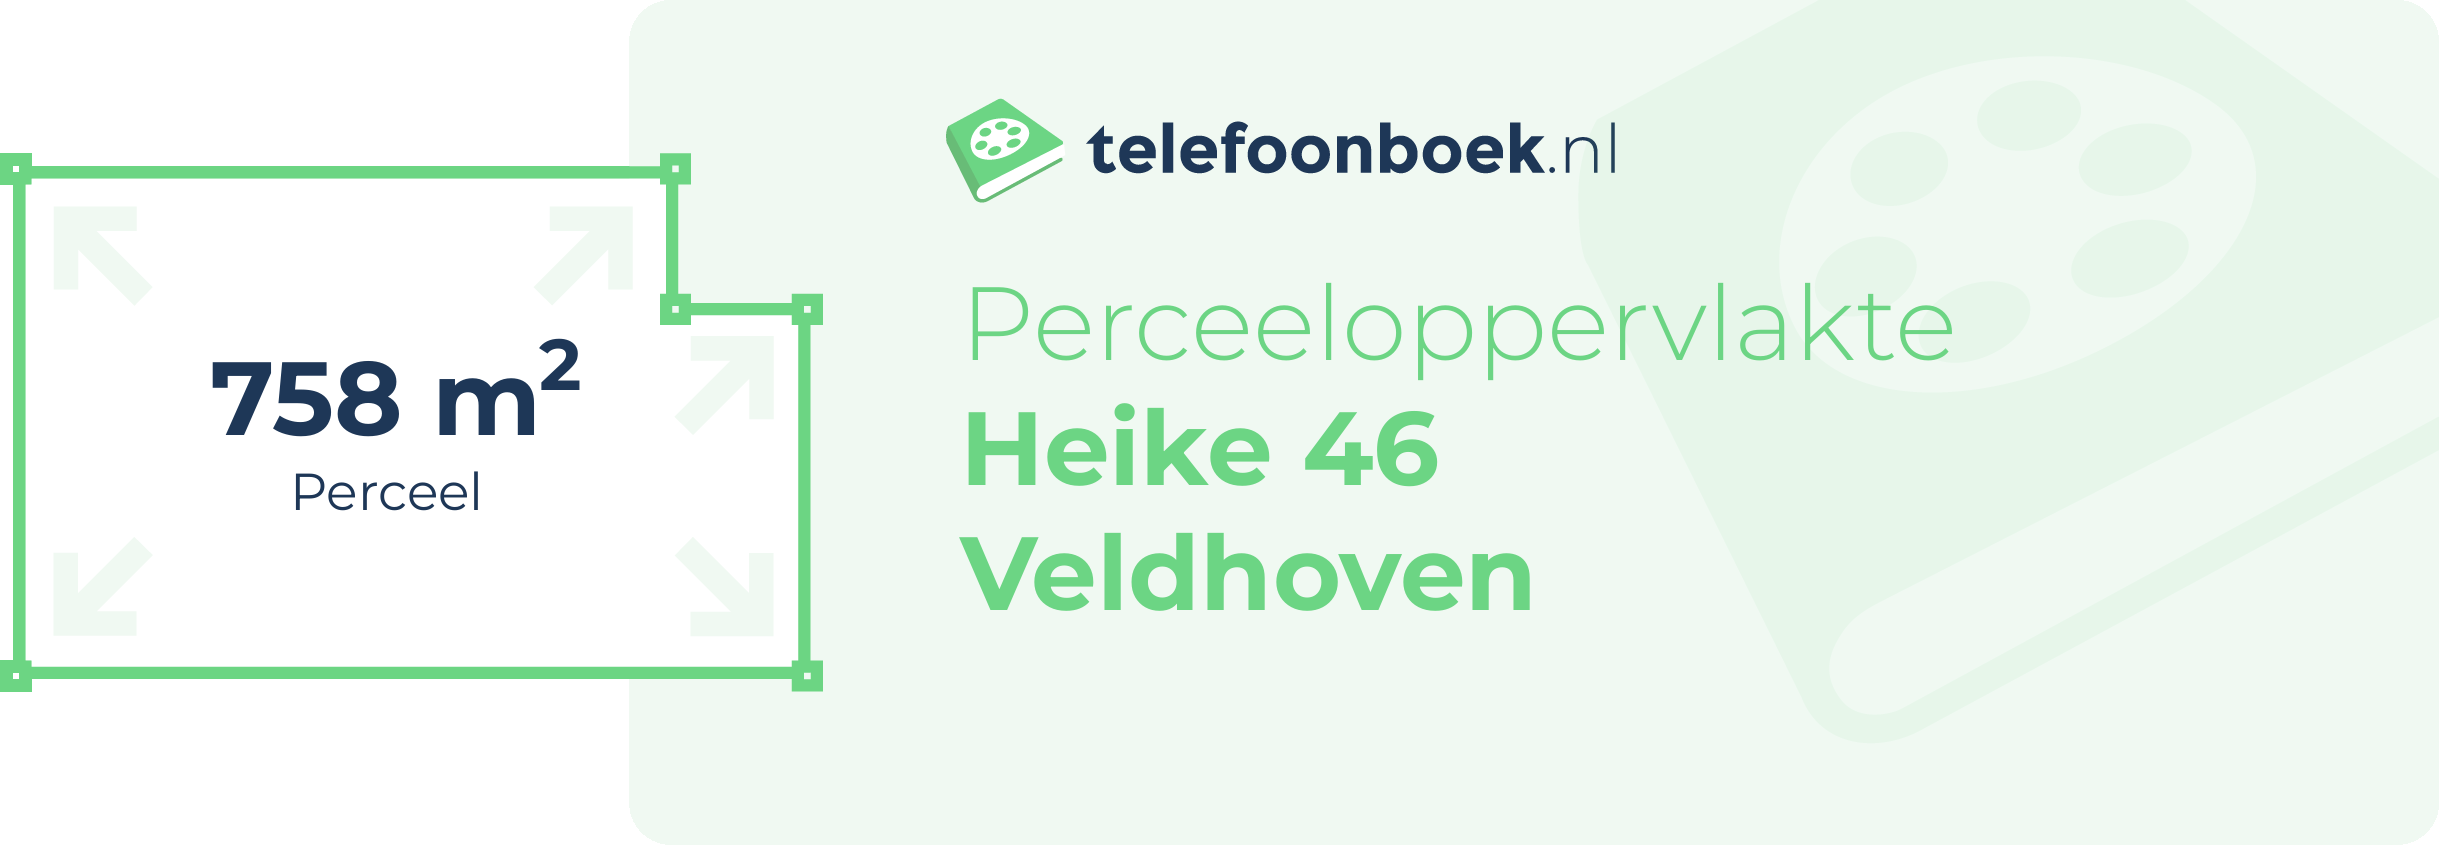 Perceeloppervlakte Heike 46 Veldhoven